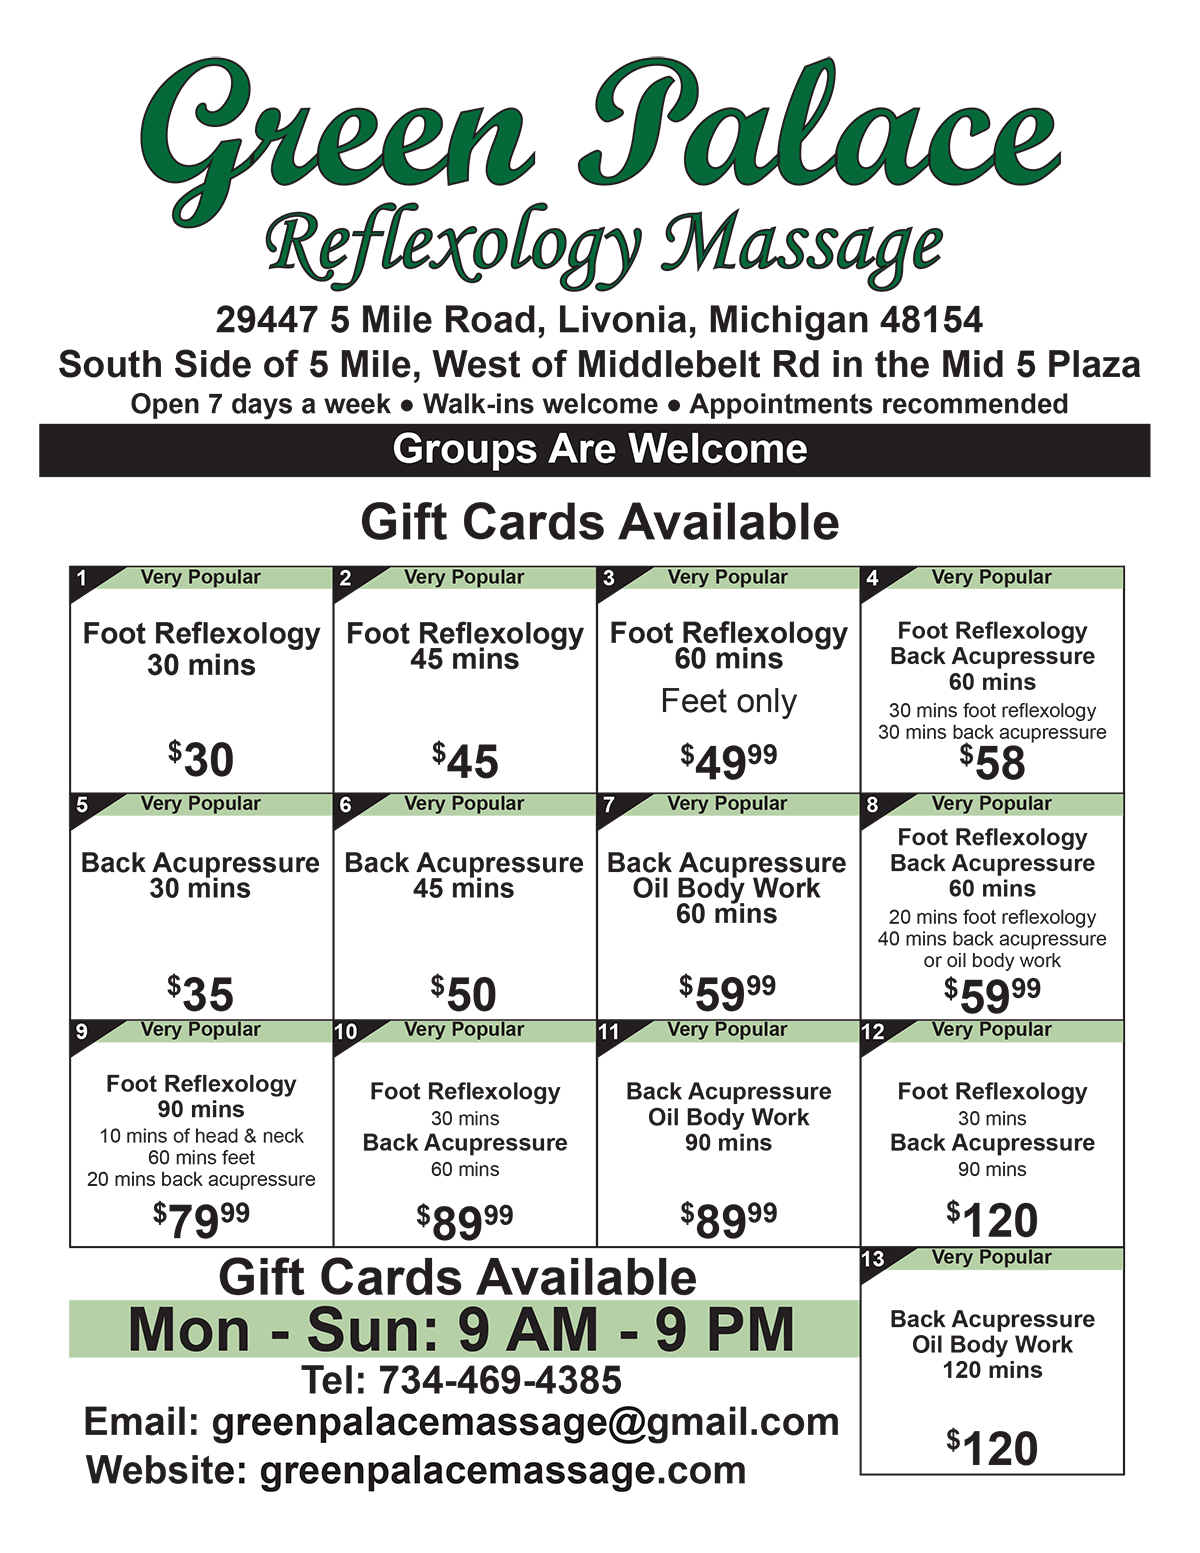 Green Palace Reflexology Massage Pricing